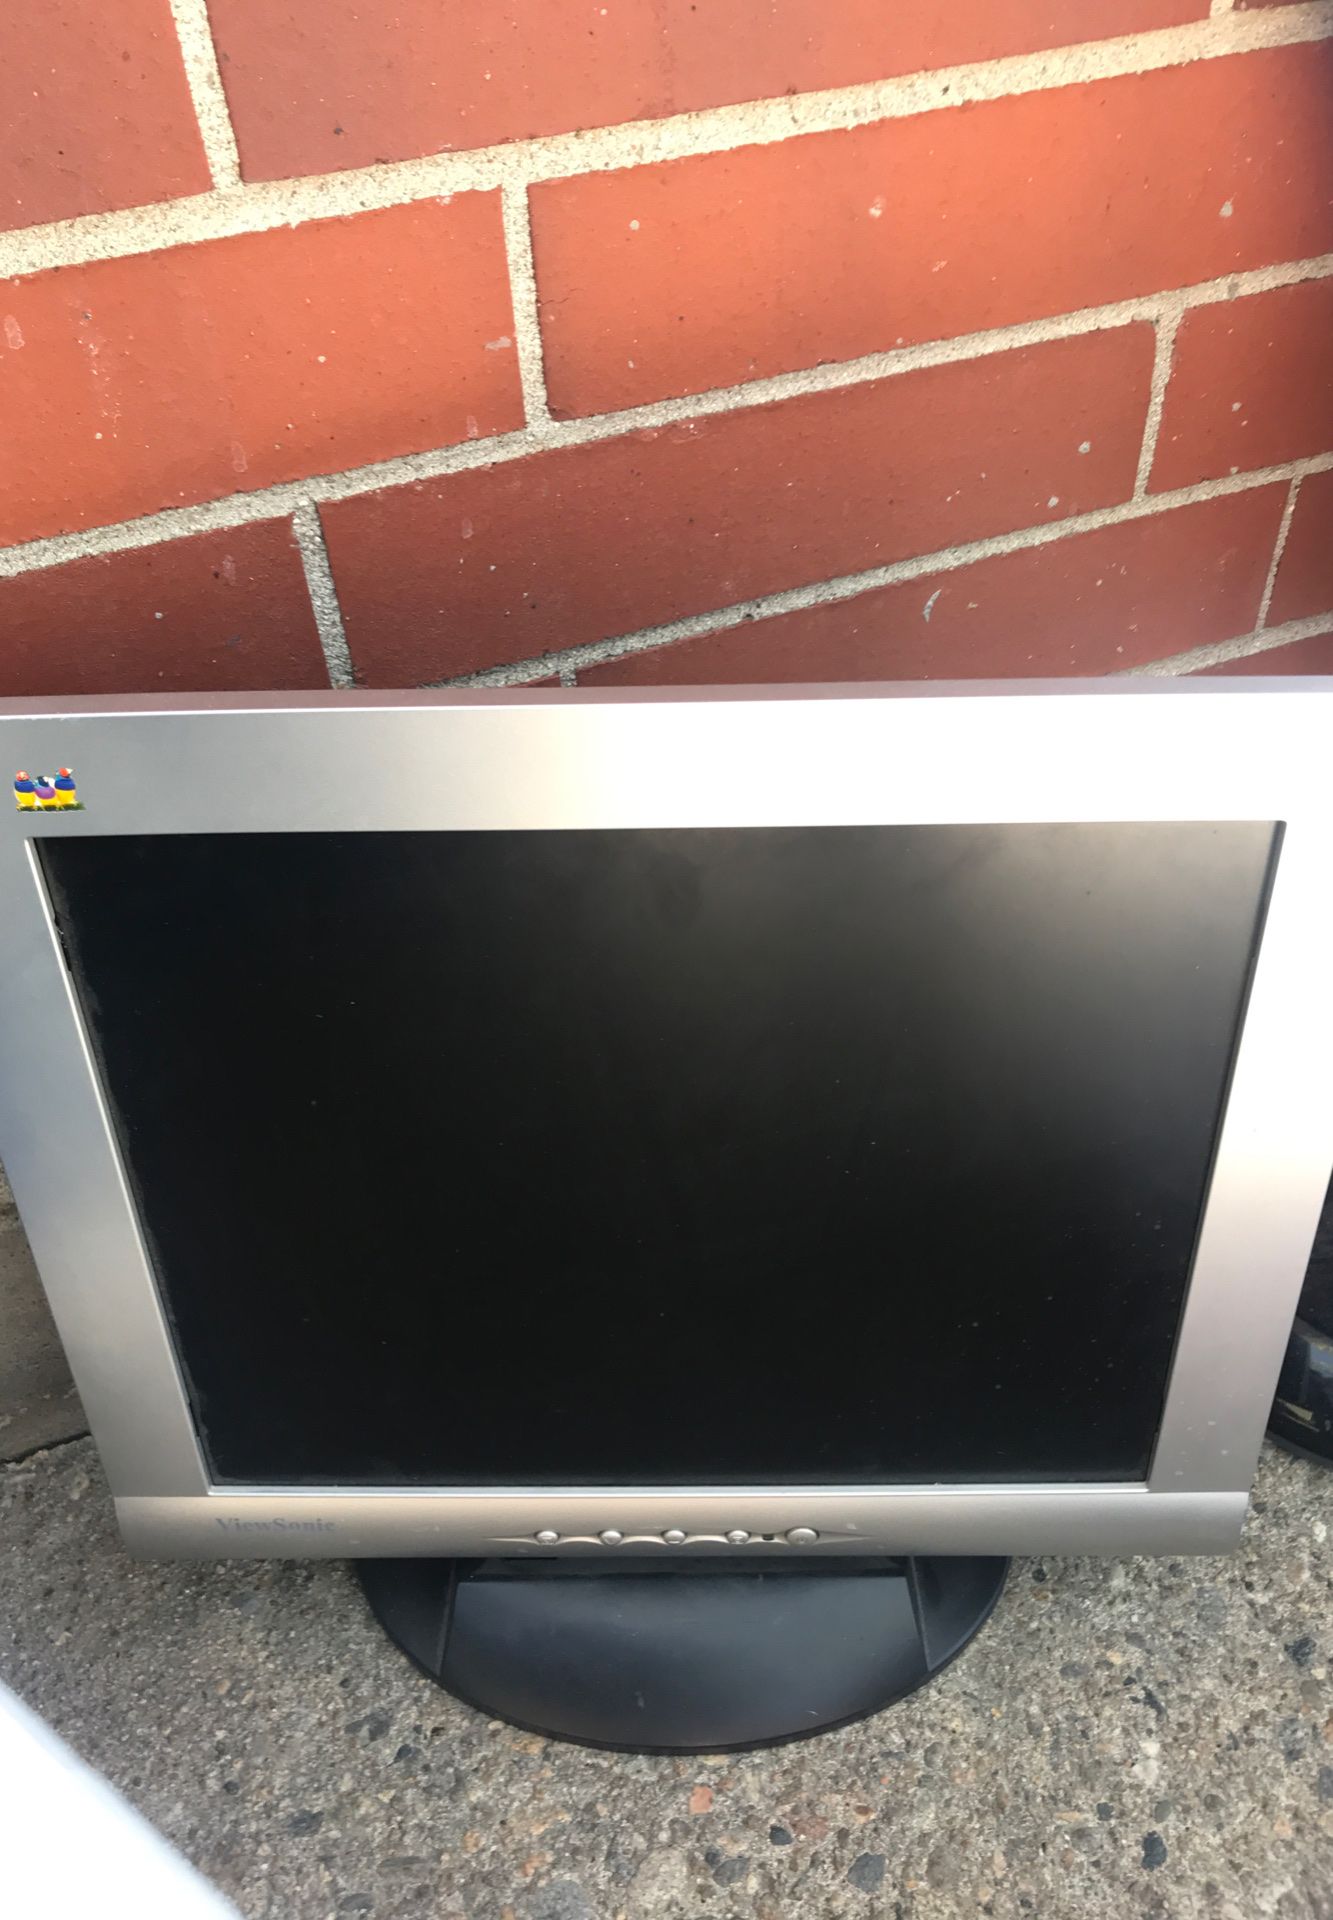 ViewSonic 17” computer monitor